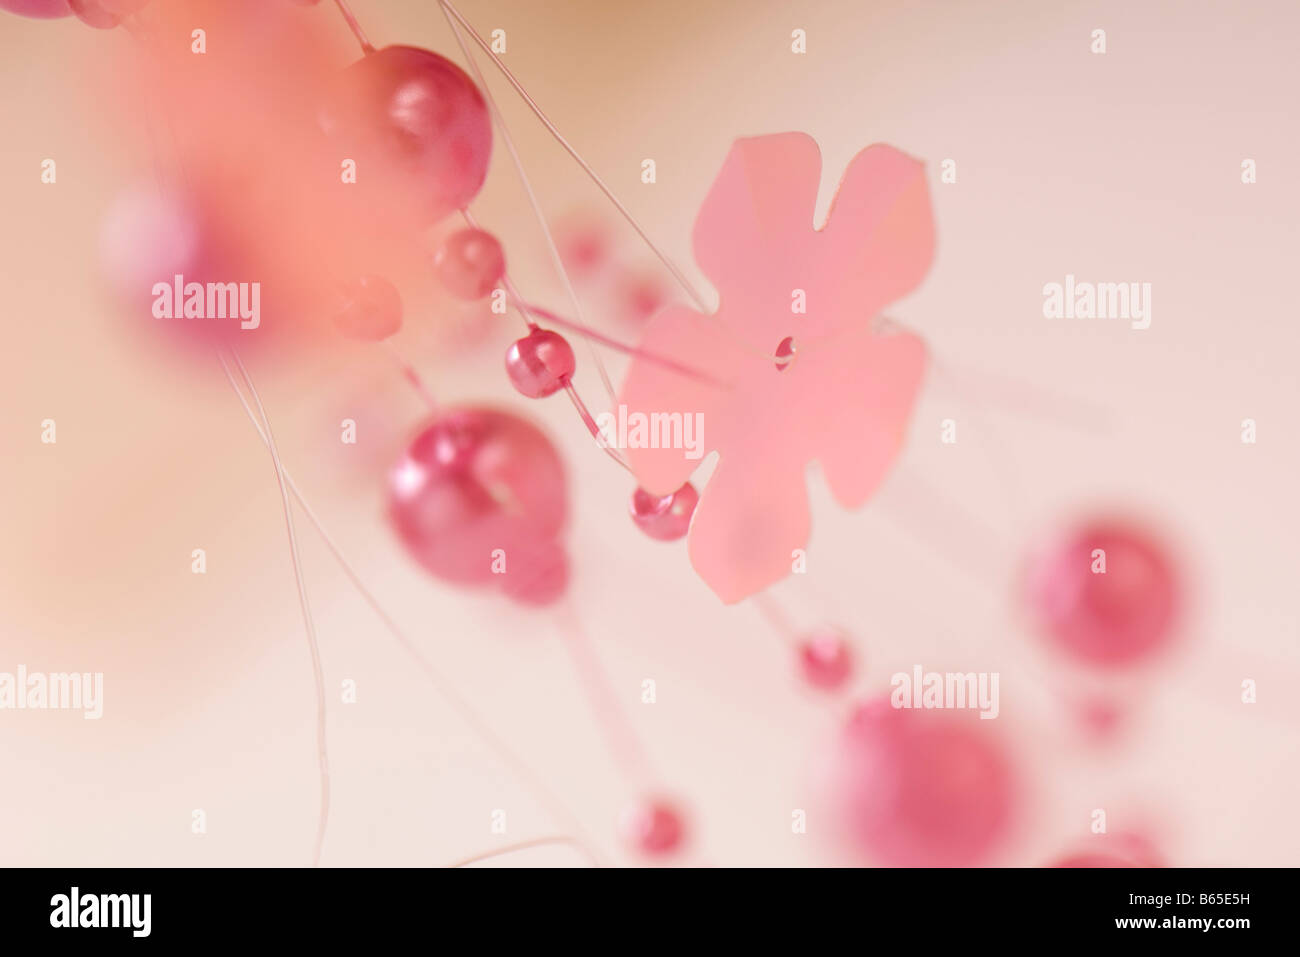 Decorative pink garland, close-up Stock Photo